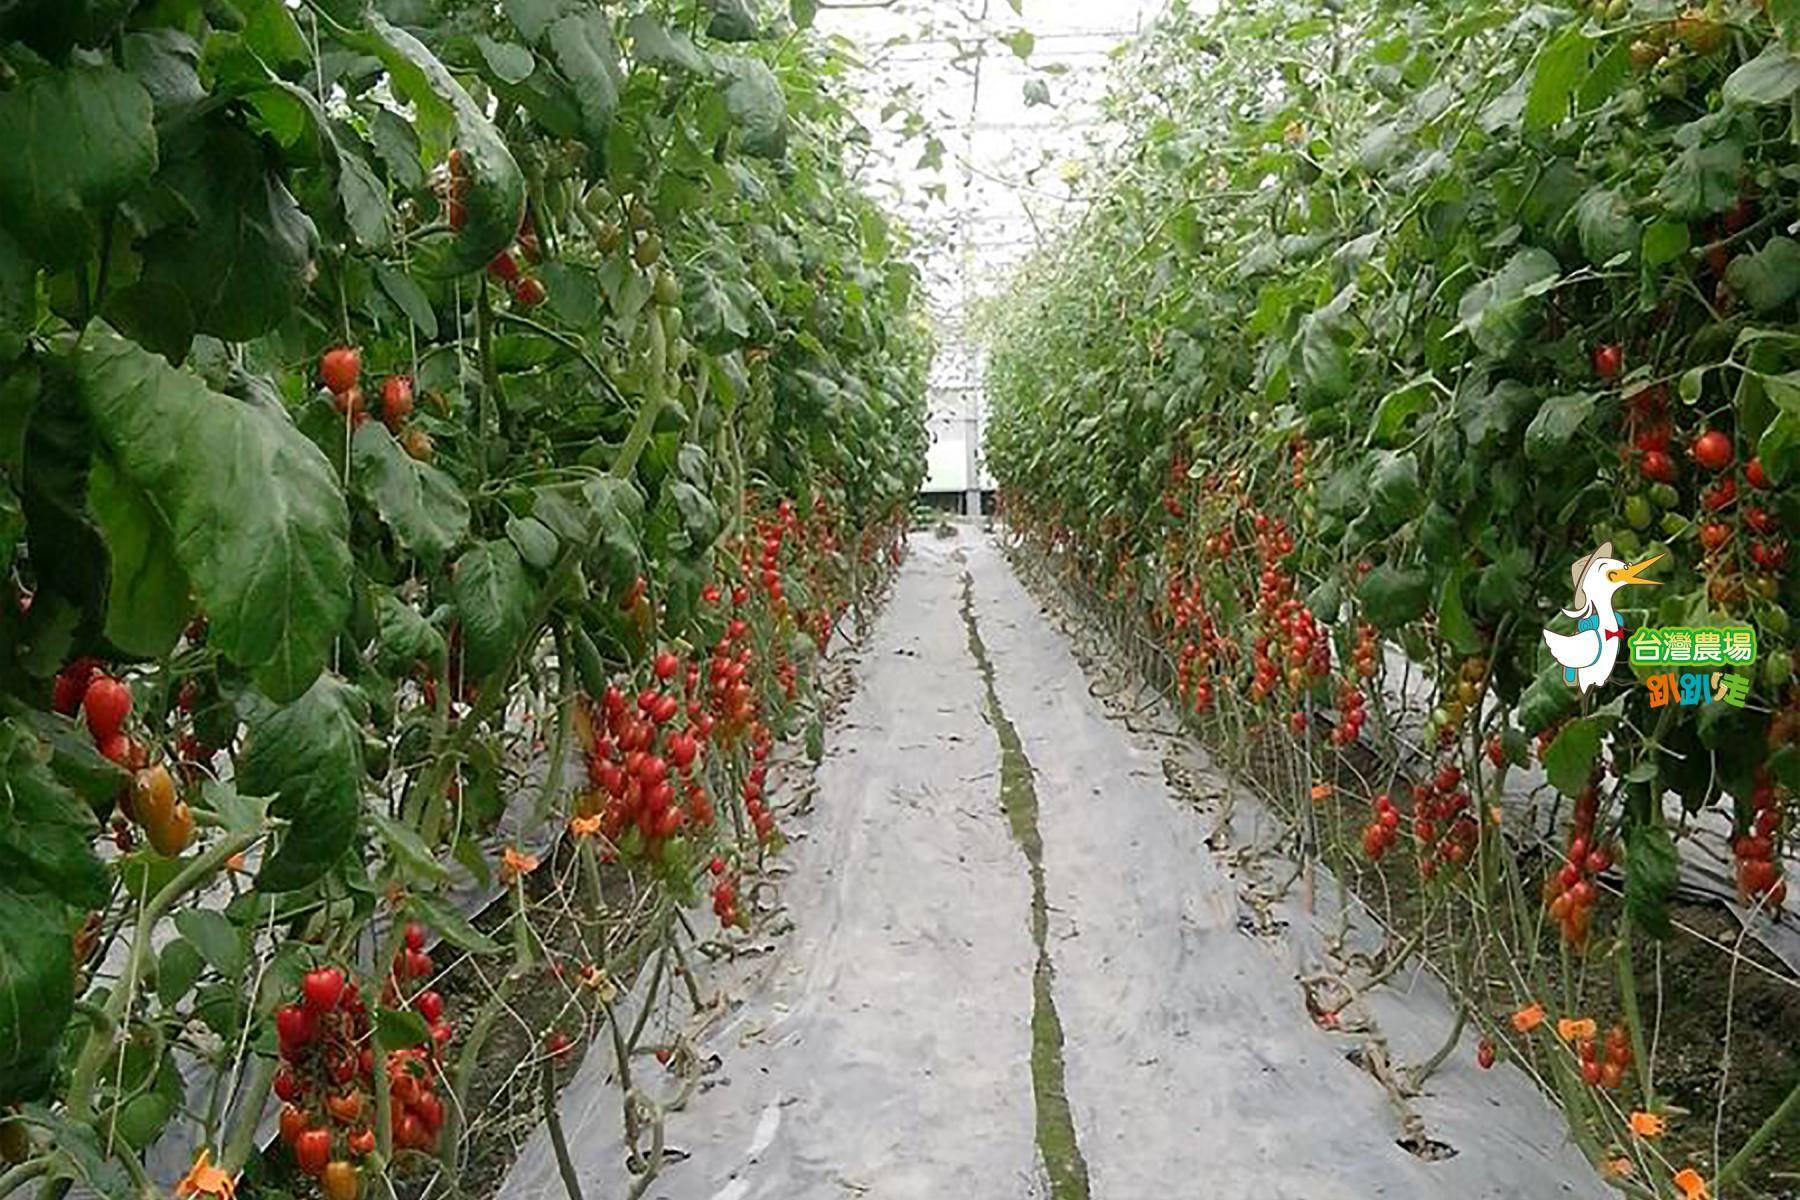 宜蘭-藤結教育農場-採果(番茄)體驗券5